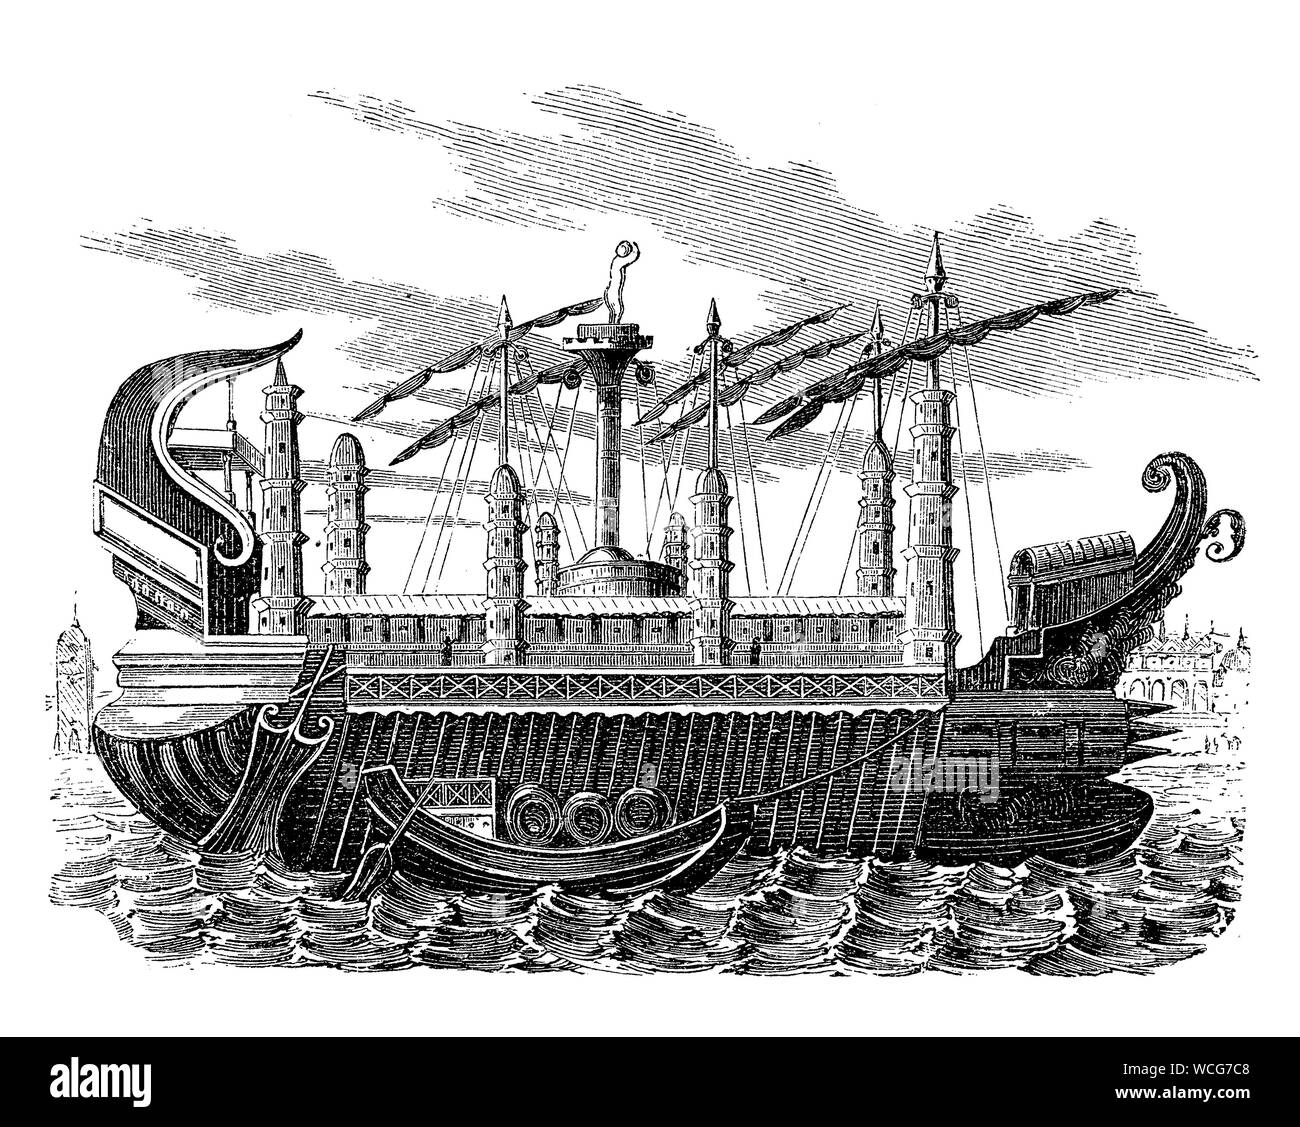 Syracusia von Archimedes mit Antifouling Technologie die Anlage von bewuchsbildenden Organismen zu verhindern war eine antike griechische Schiff der größten der Antike in der Lage, Güter, Soldaten und katapultiert. Stockfoto